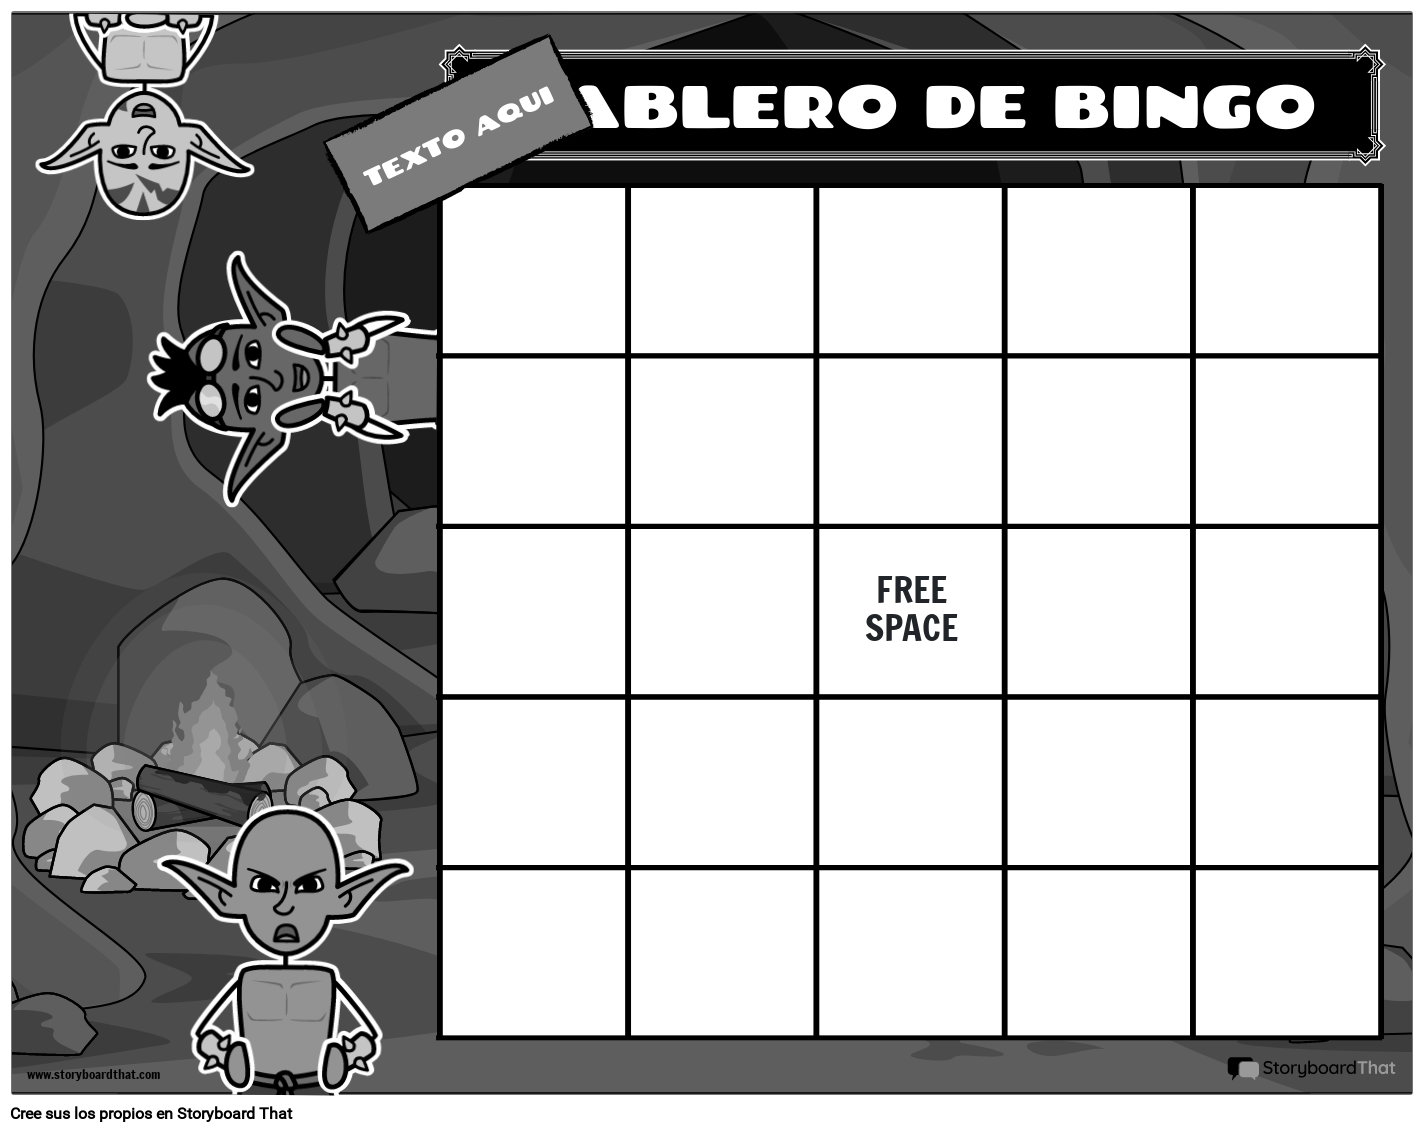 tablero-de-bingo-5-bw-storyboard-por-es-examples